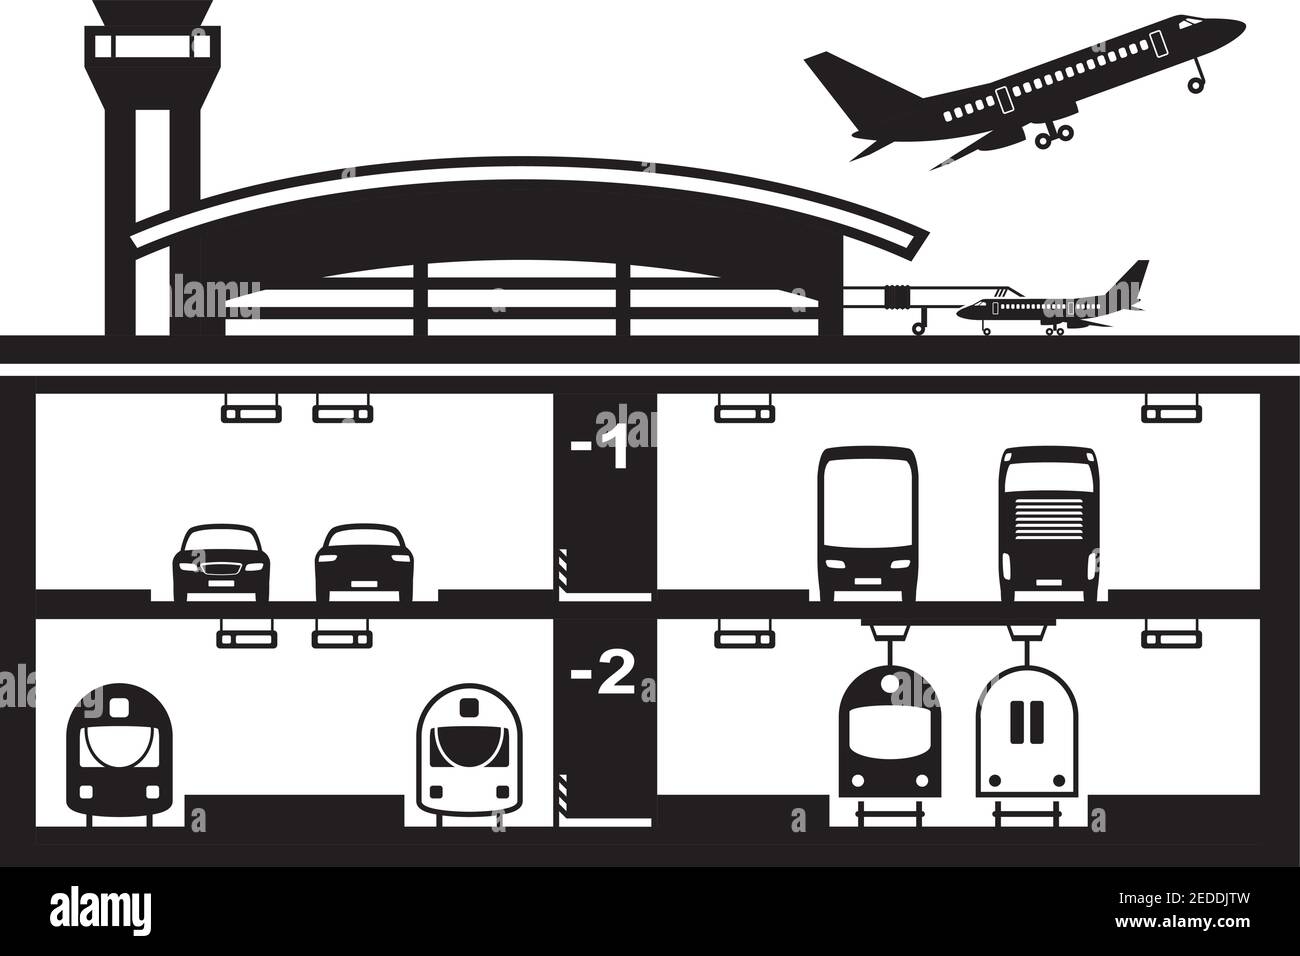 Transportation hub at airport – vector illustration Stock Vector